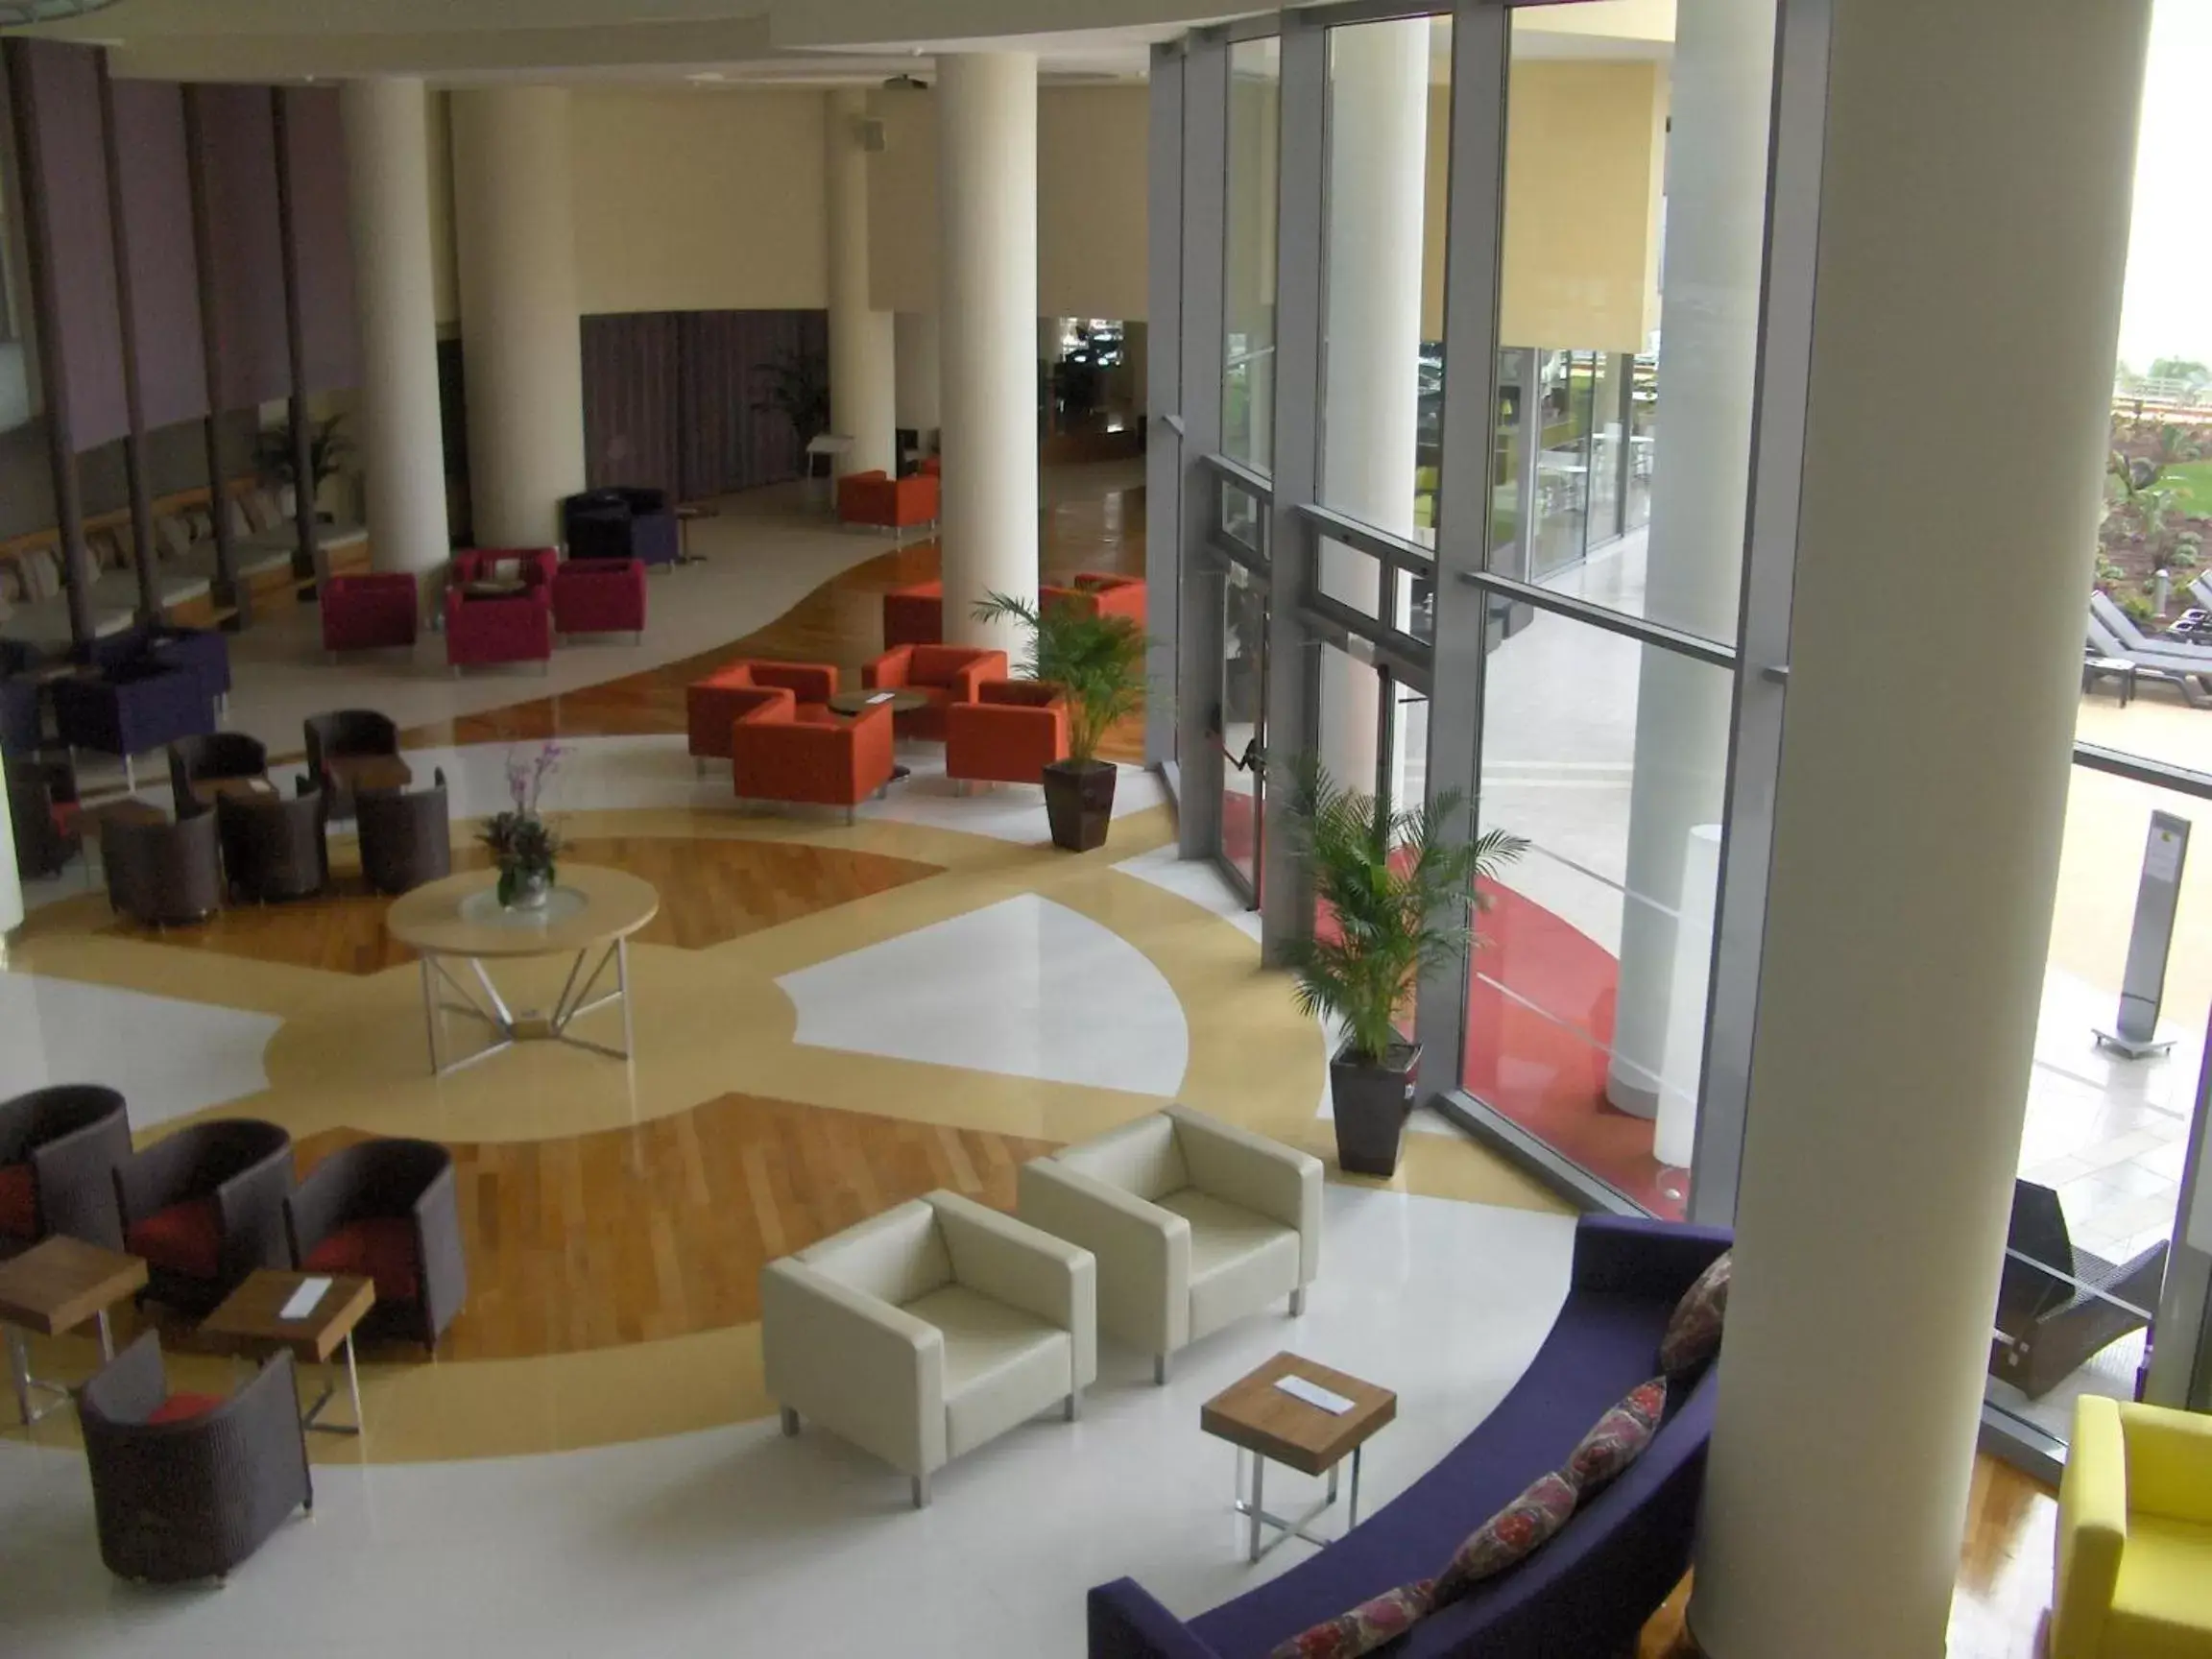 Lobby or reception in Pestana Promenade Ocean Resort Hotel